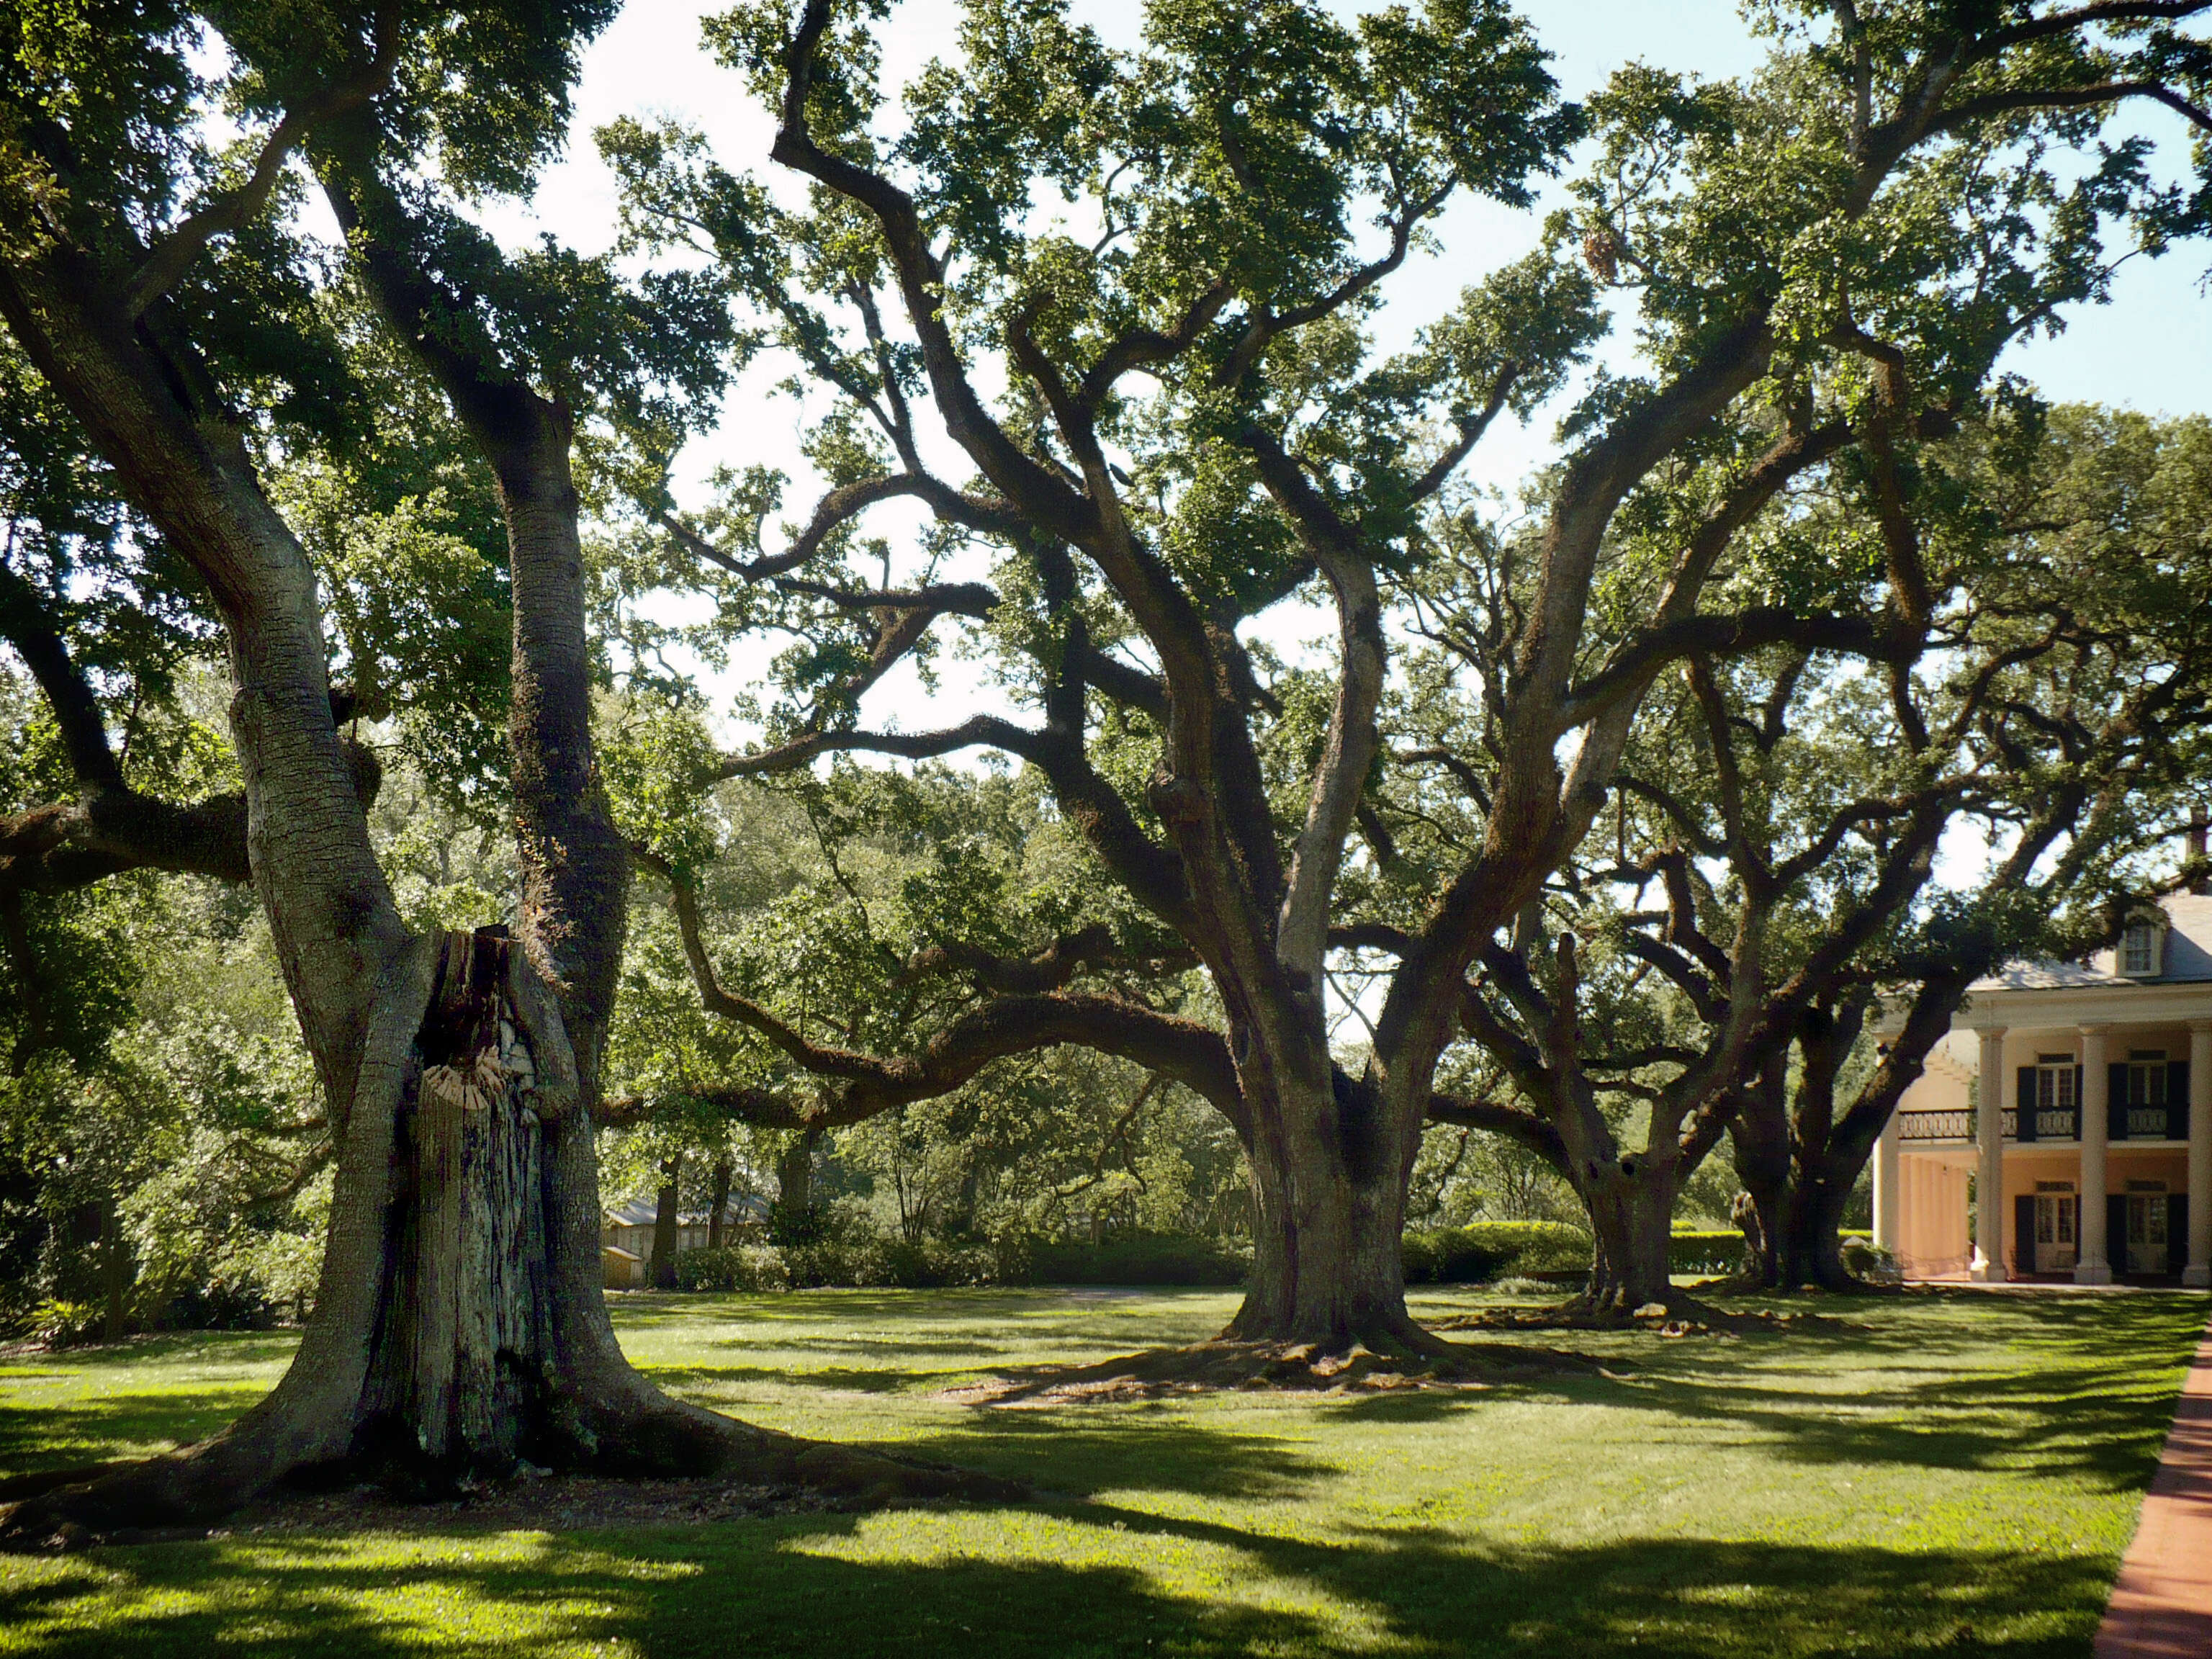 Image of Southern Live Oak